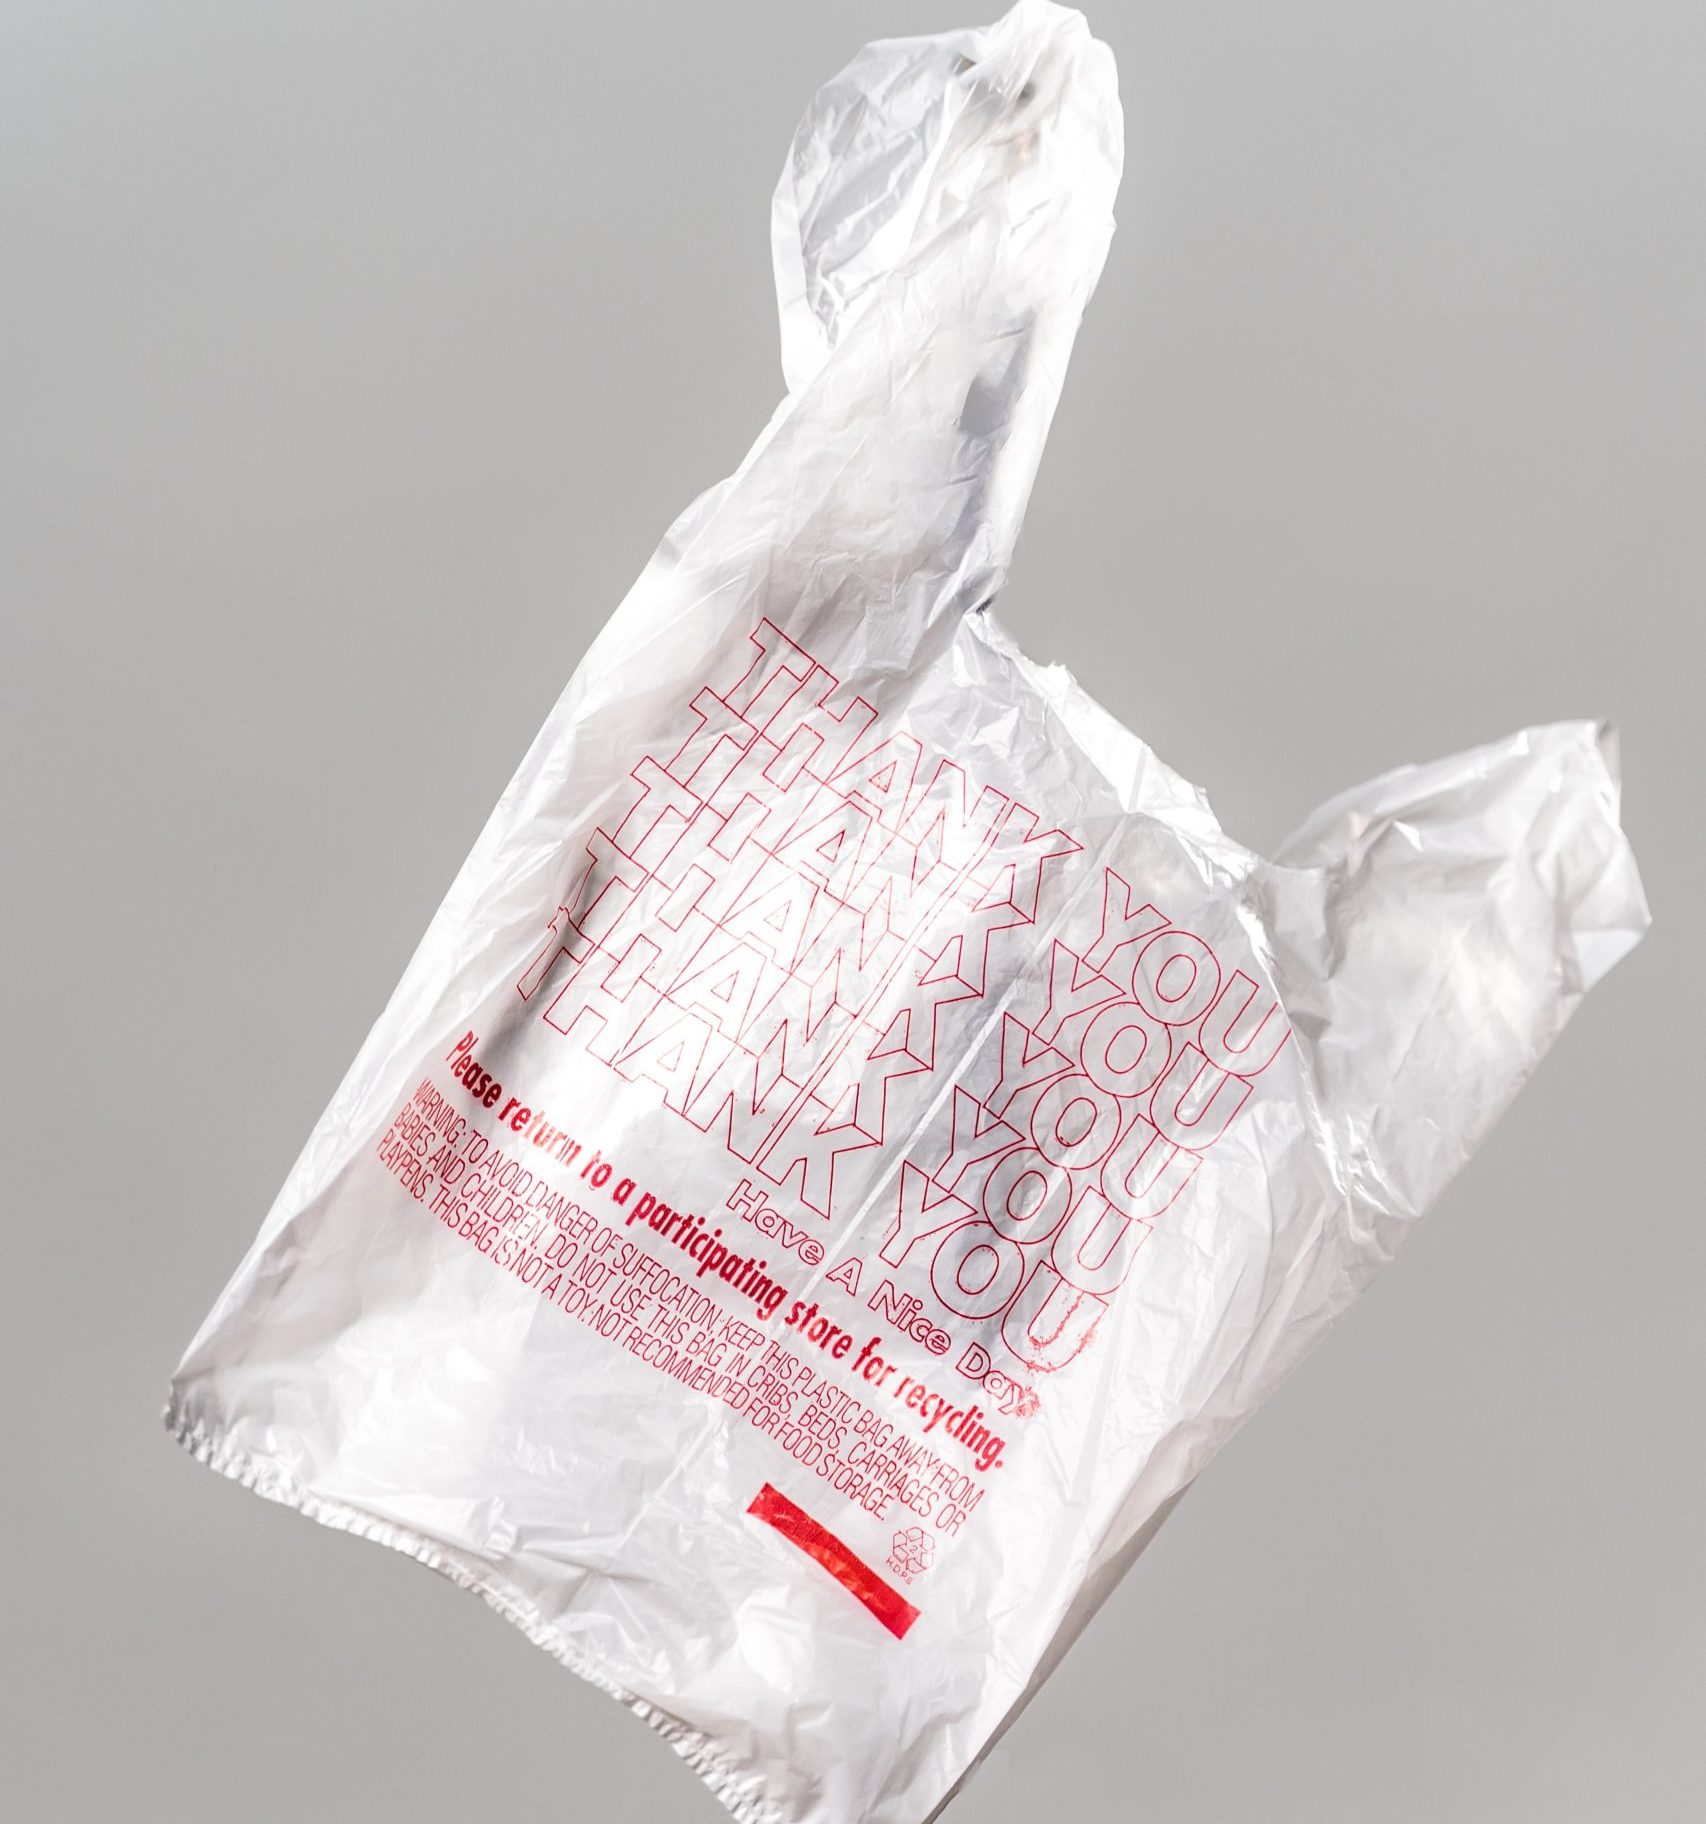 a plastic bag